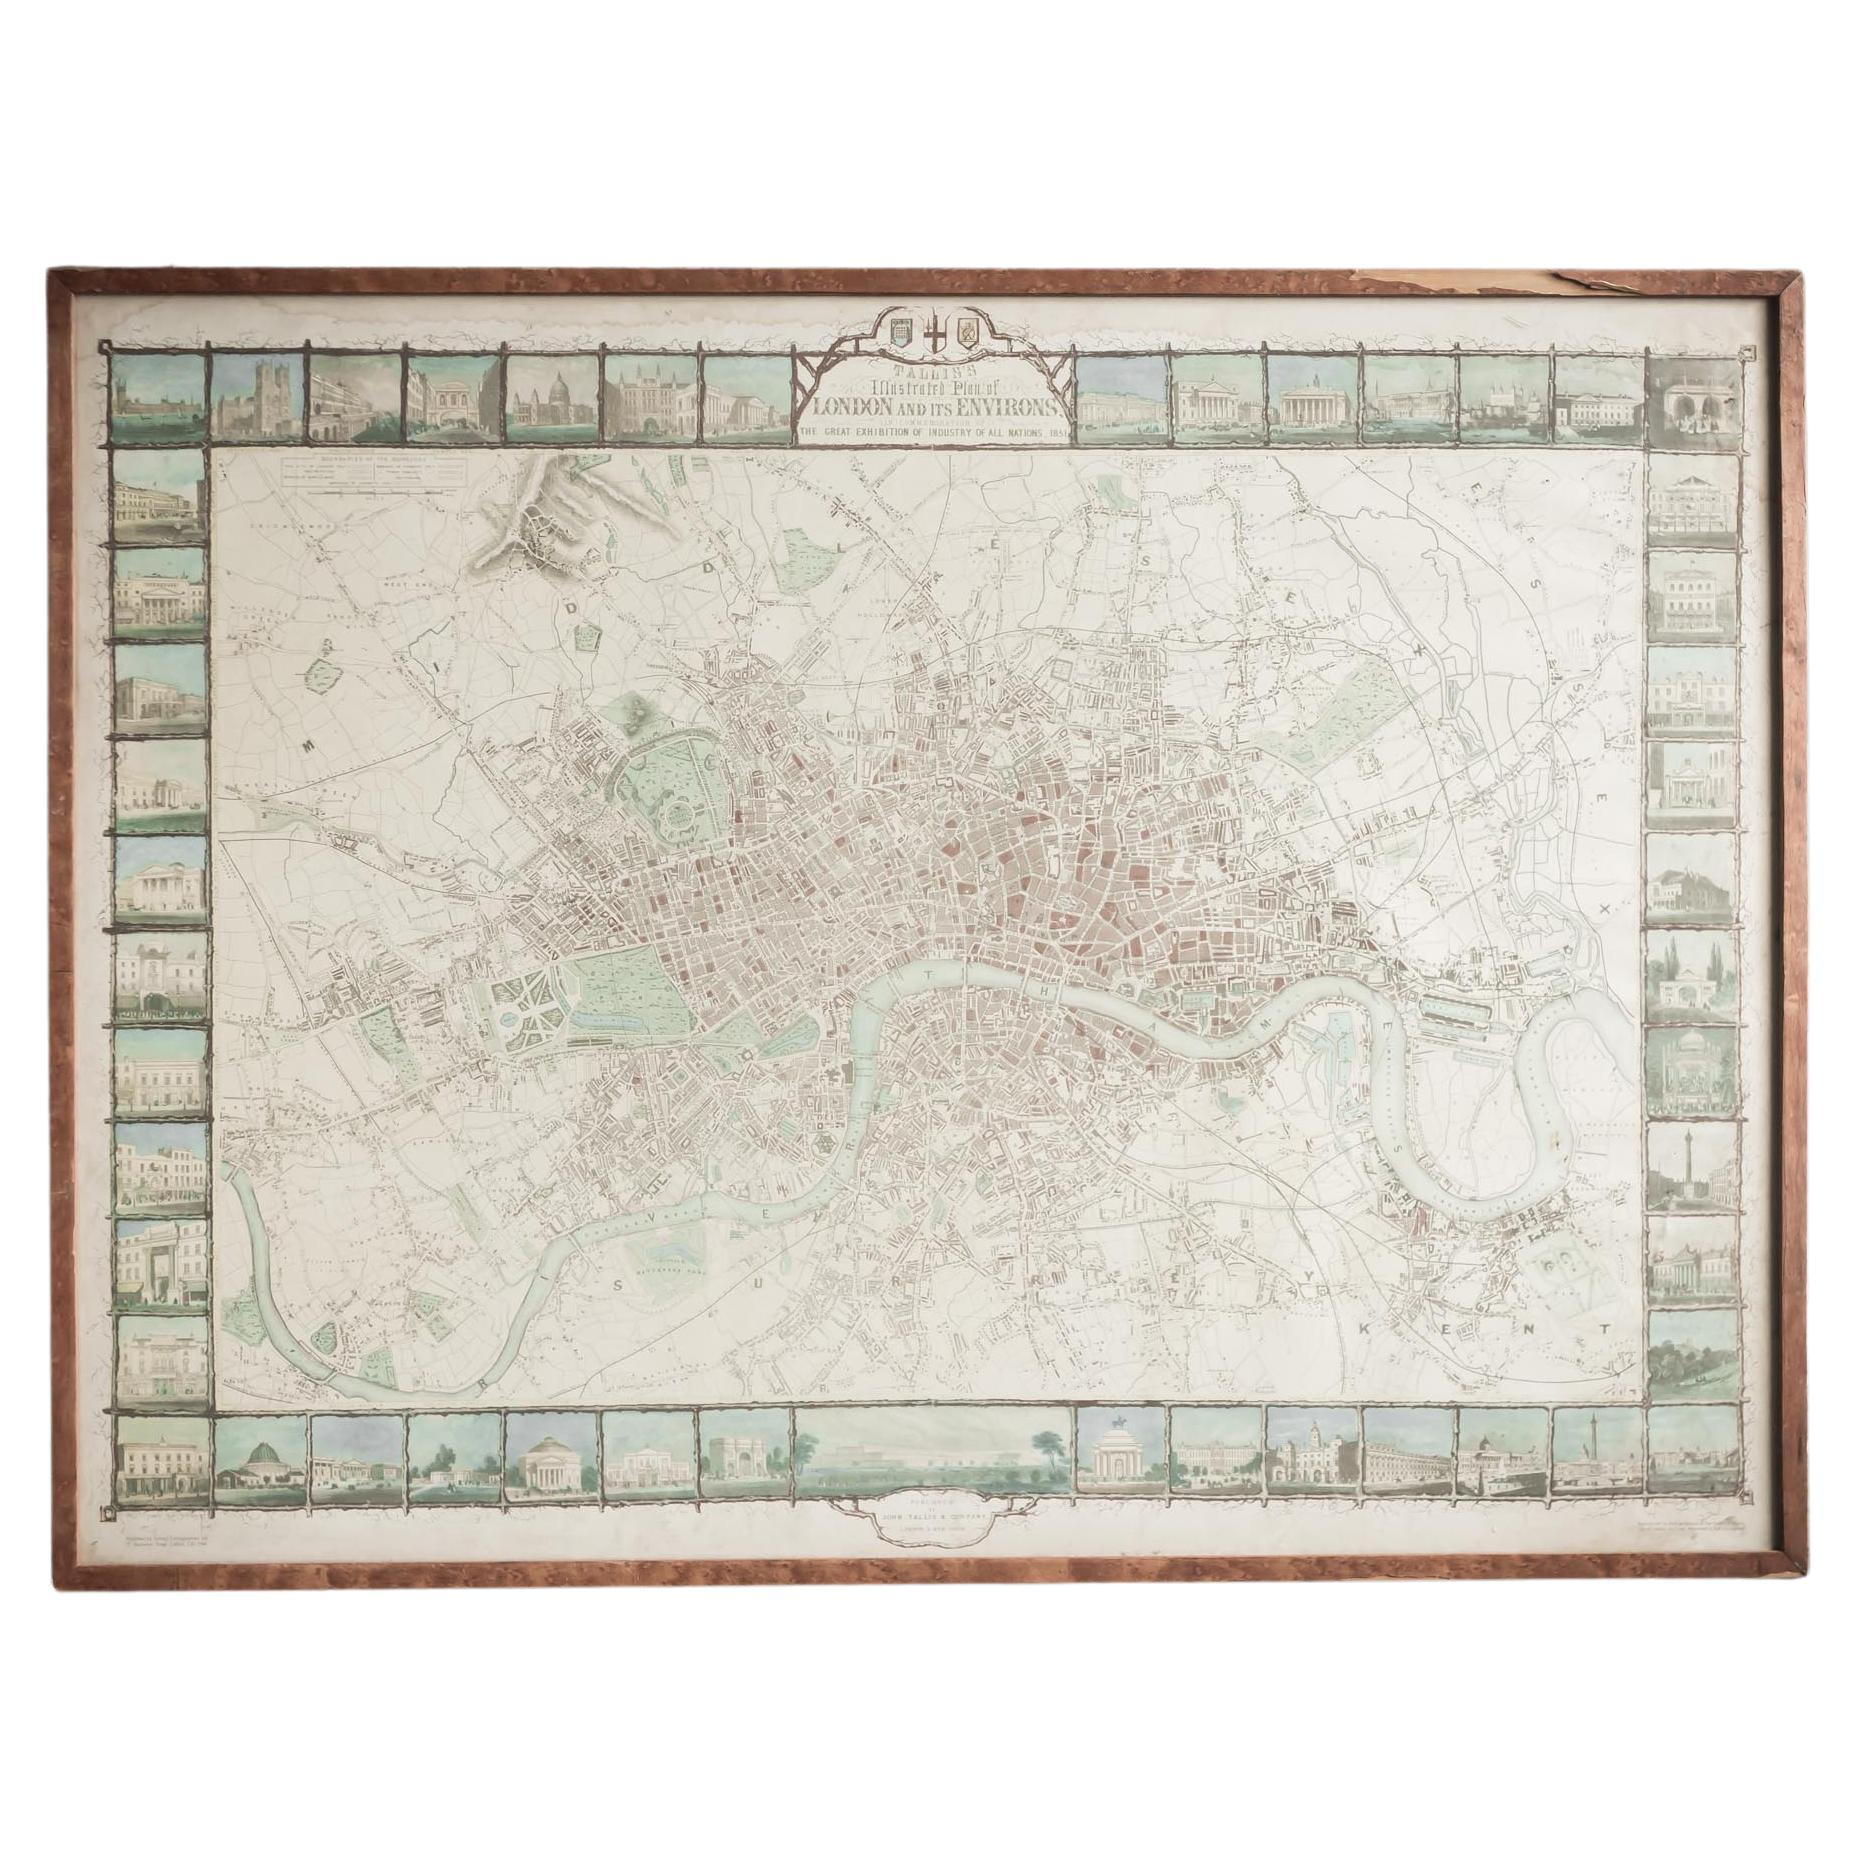 Carte illustrée de Londres issue d'une exposition